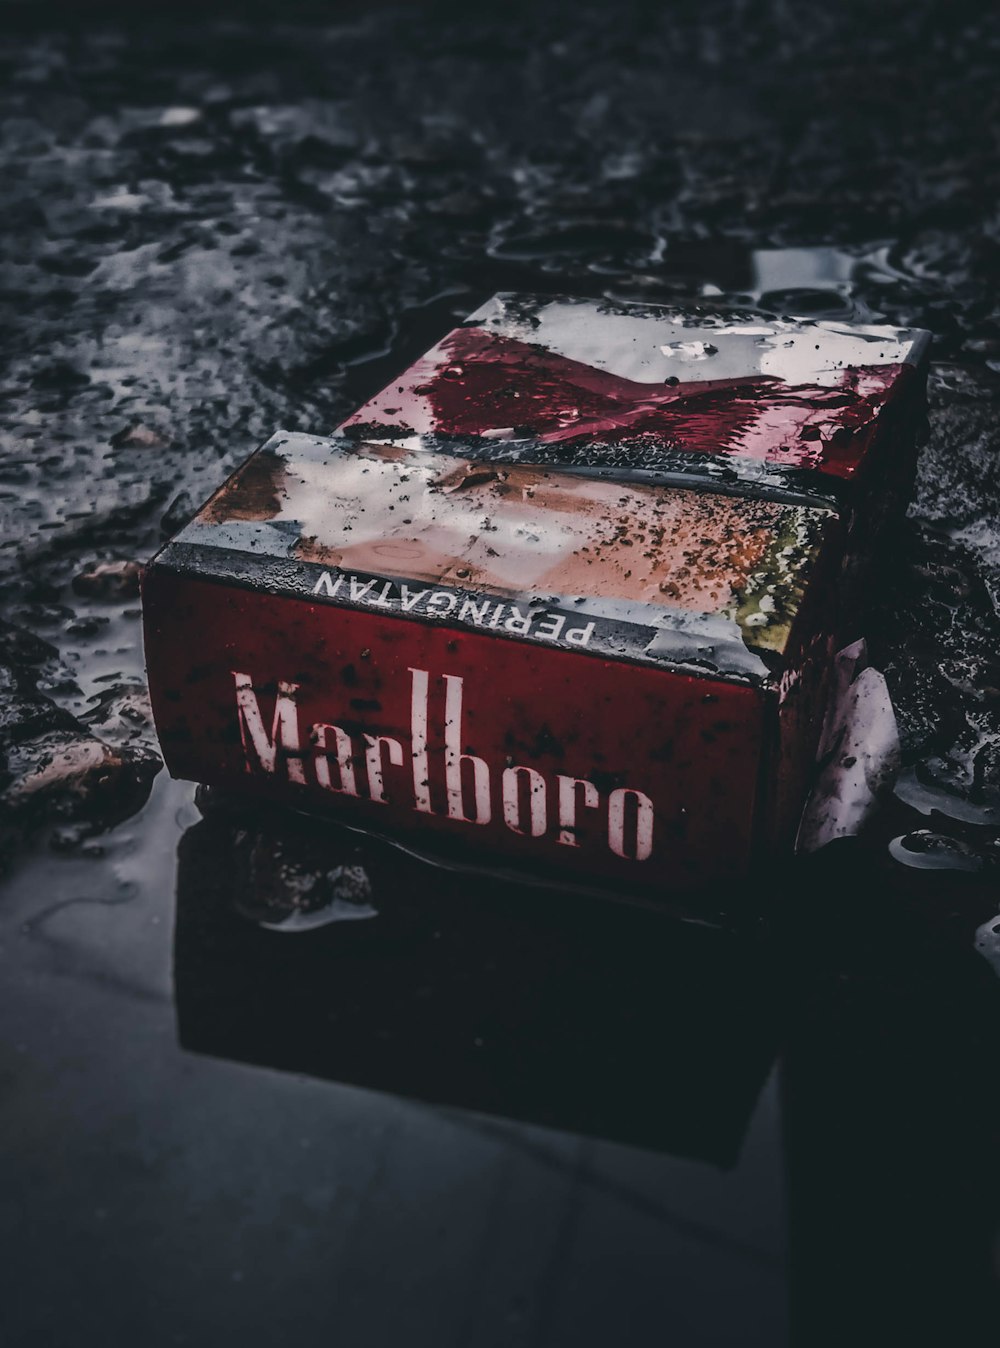 Marlboro flip-top cigarette box